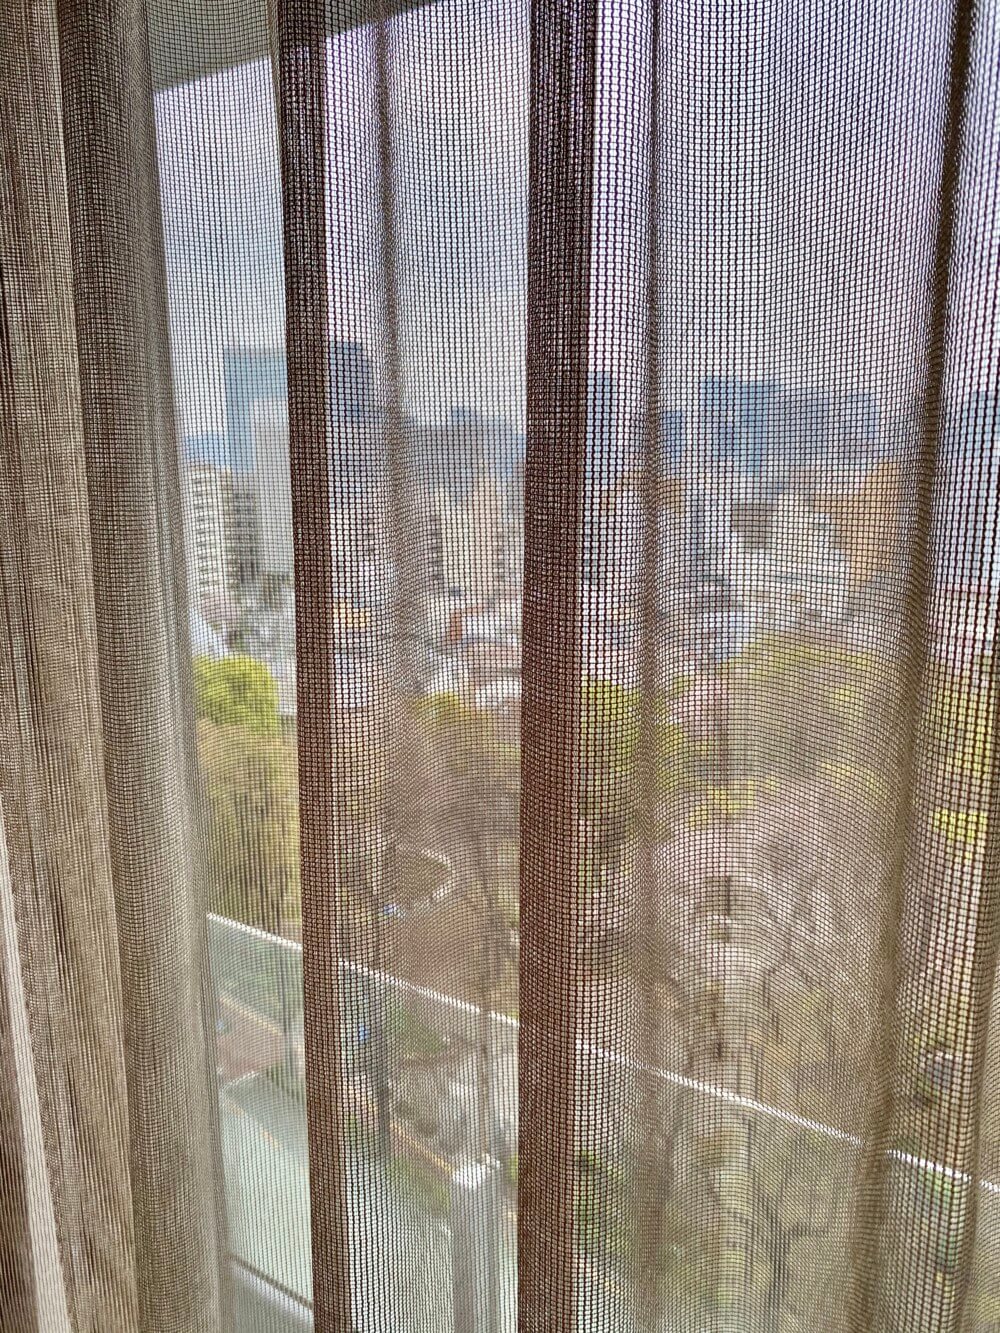 タワーマンションのカーテン で、「ラグジュアリー×シンプルシティ」な窓辺